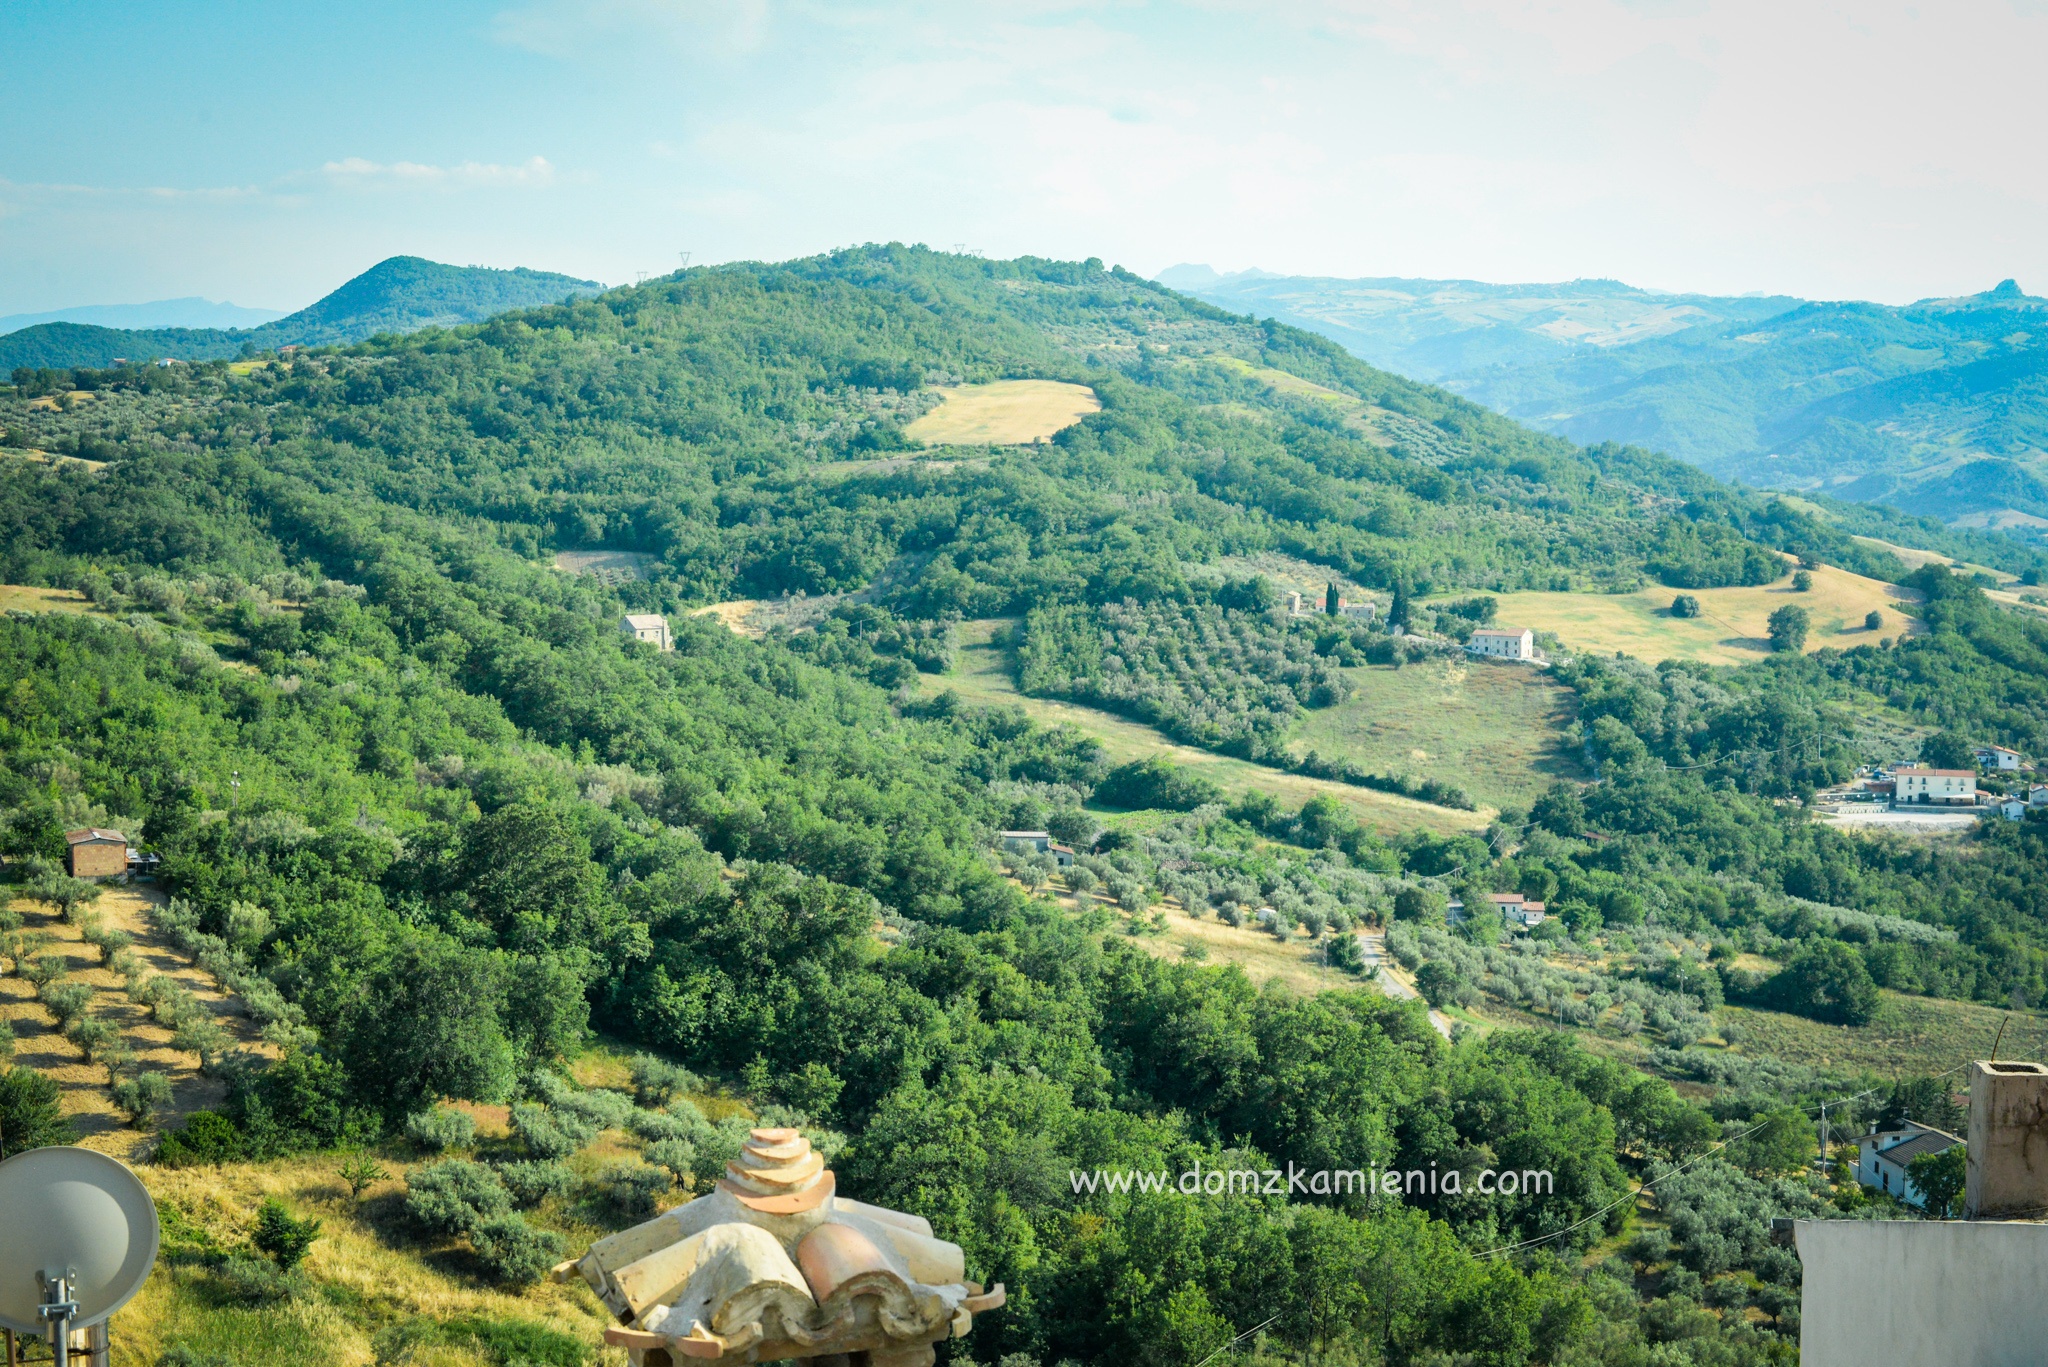 Dom z Kamienia, wakacje w Abruzzo Costa dei trabocchi